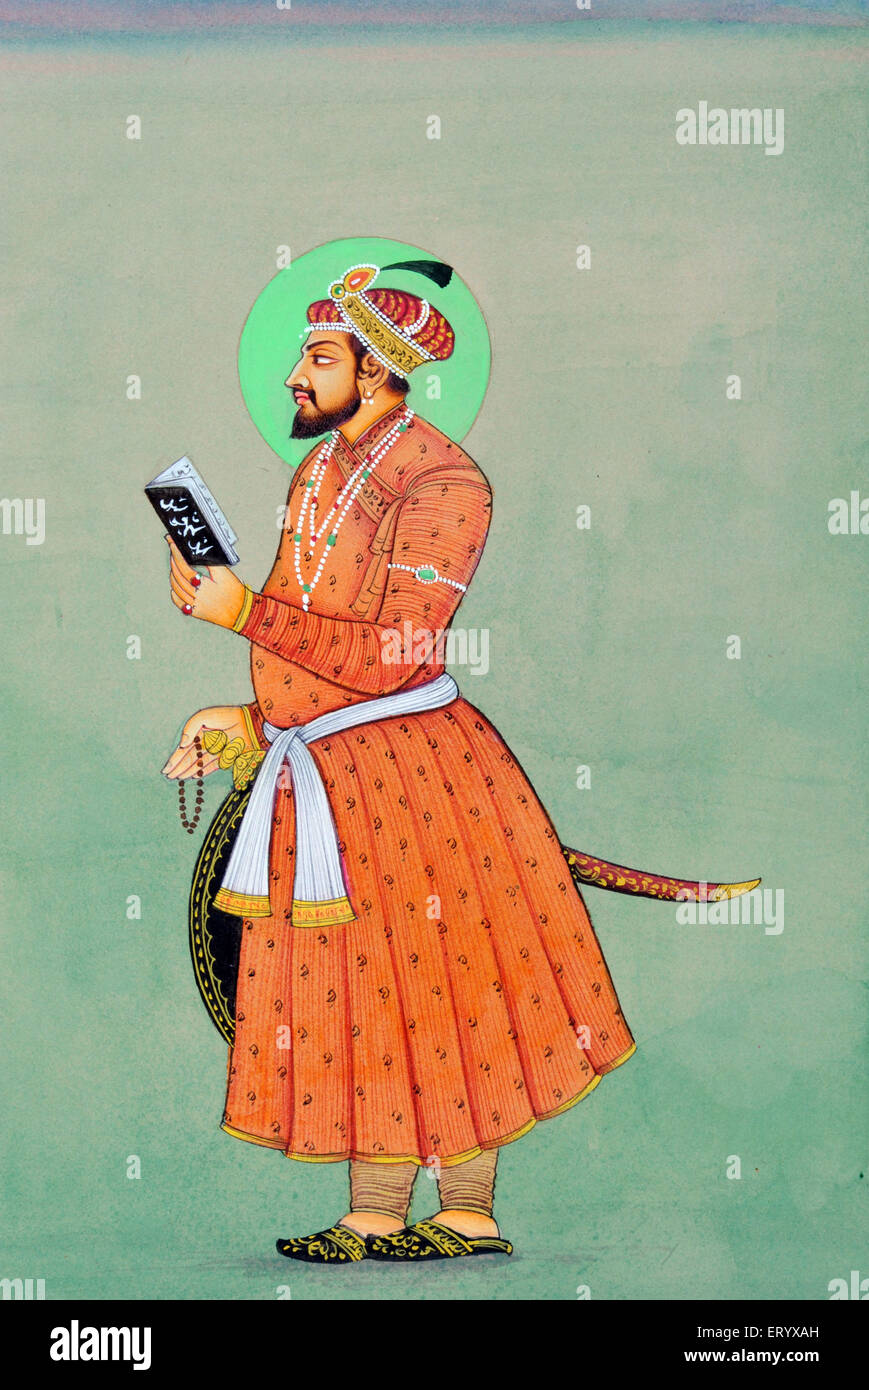 Aurangzeb avec l'épée bouclier prière perles Coran miniature peinture de l'empereur indien Mughal Inde Asie Banque D'Images